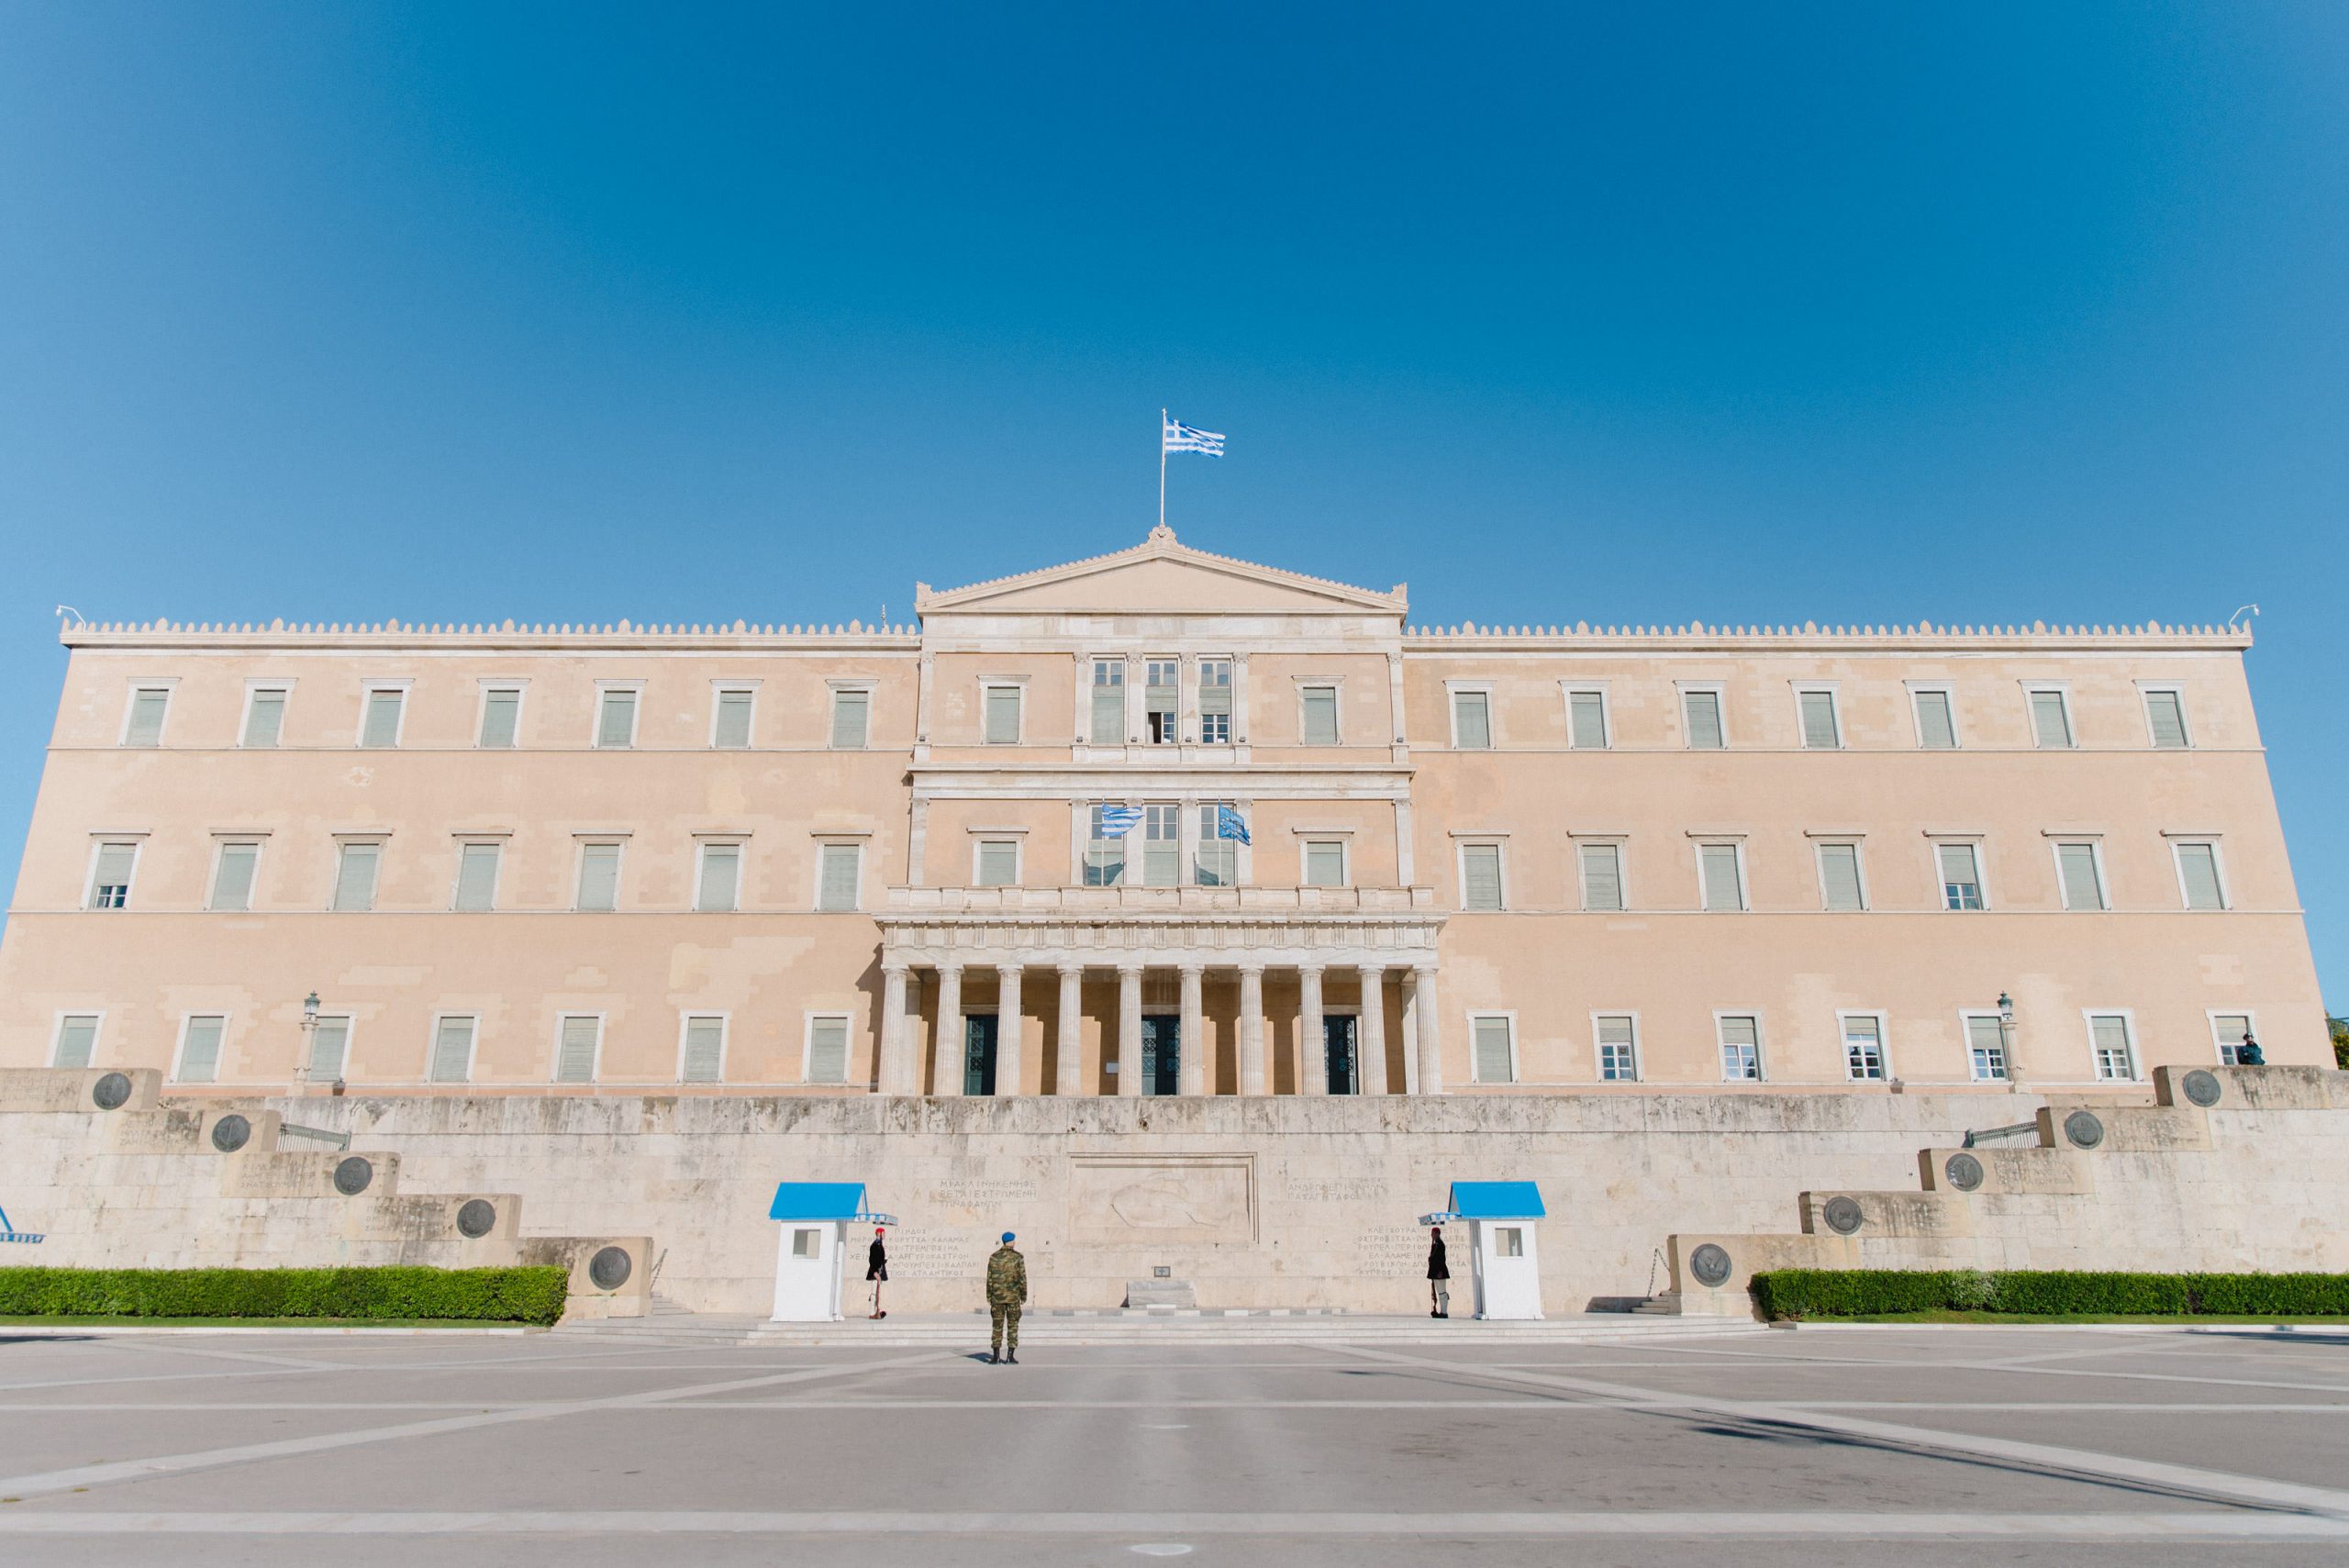 Πρακτικό επιλογής τουριστικού γραφείου για την εκδρομή της Β’ Λυκείου στη Βουλή των Ελλήνων